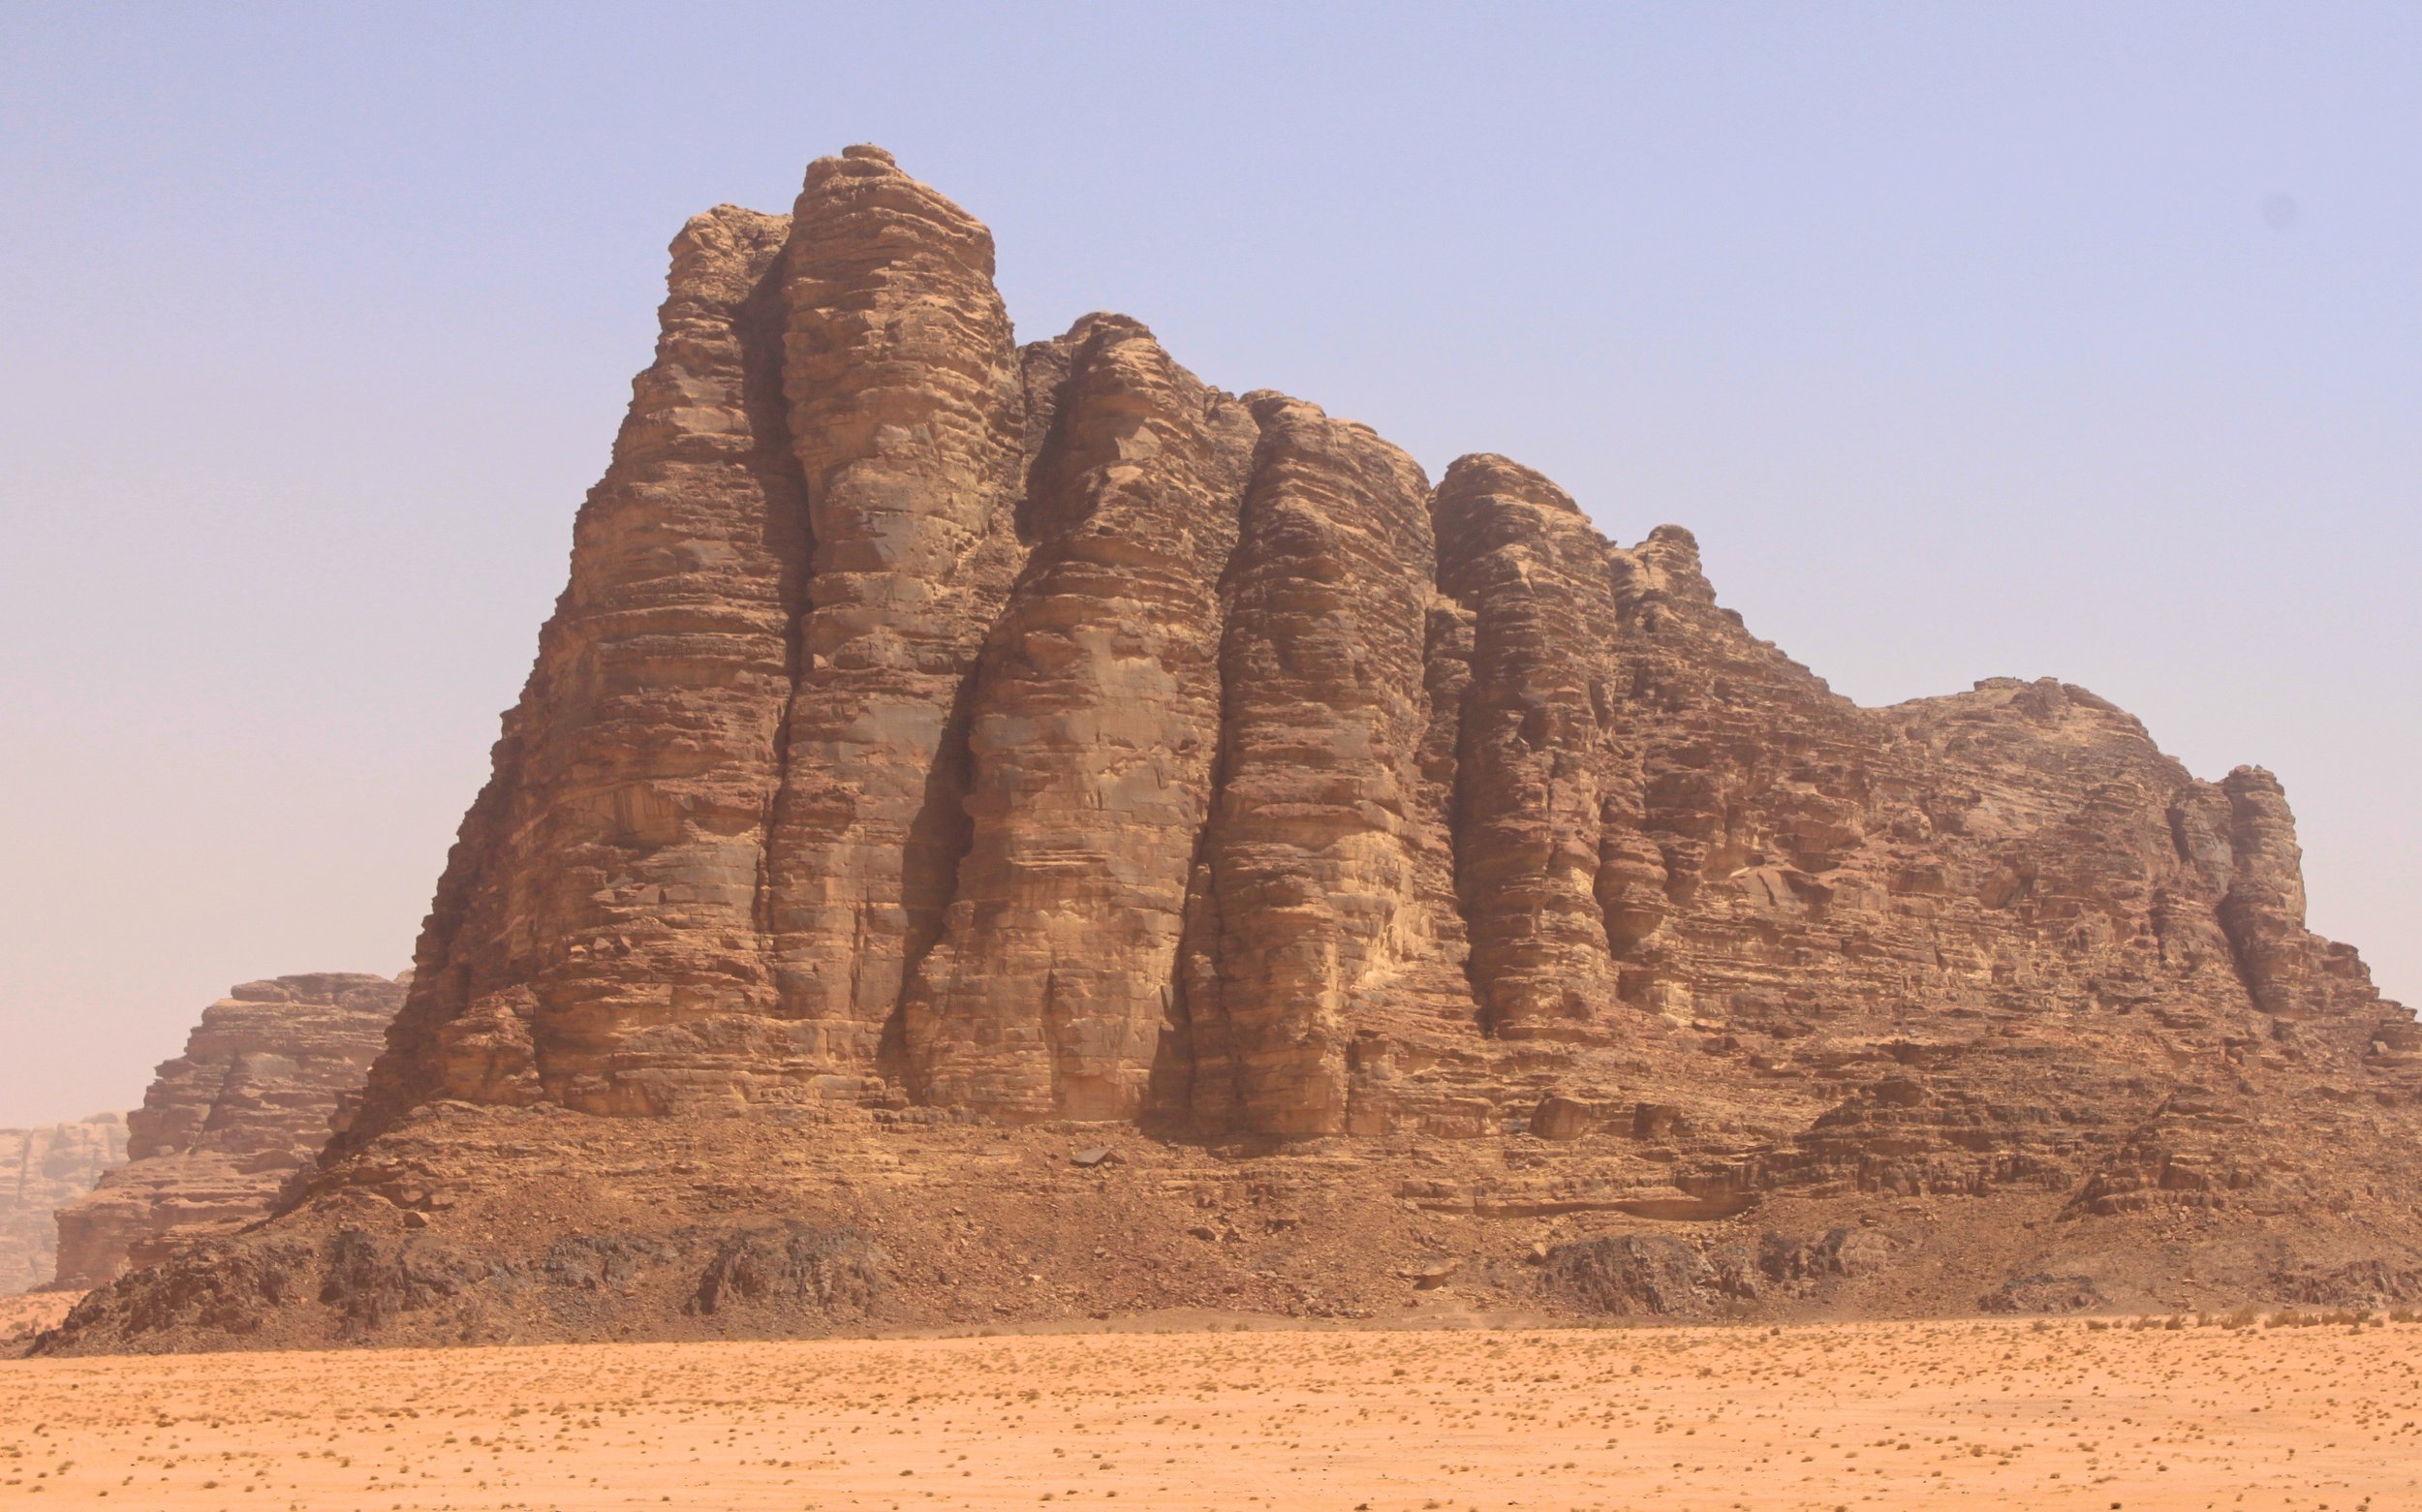 The Seven Pillars of Wisdom in Wadi Rum, Jordan